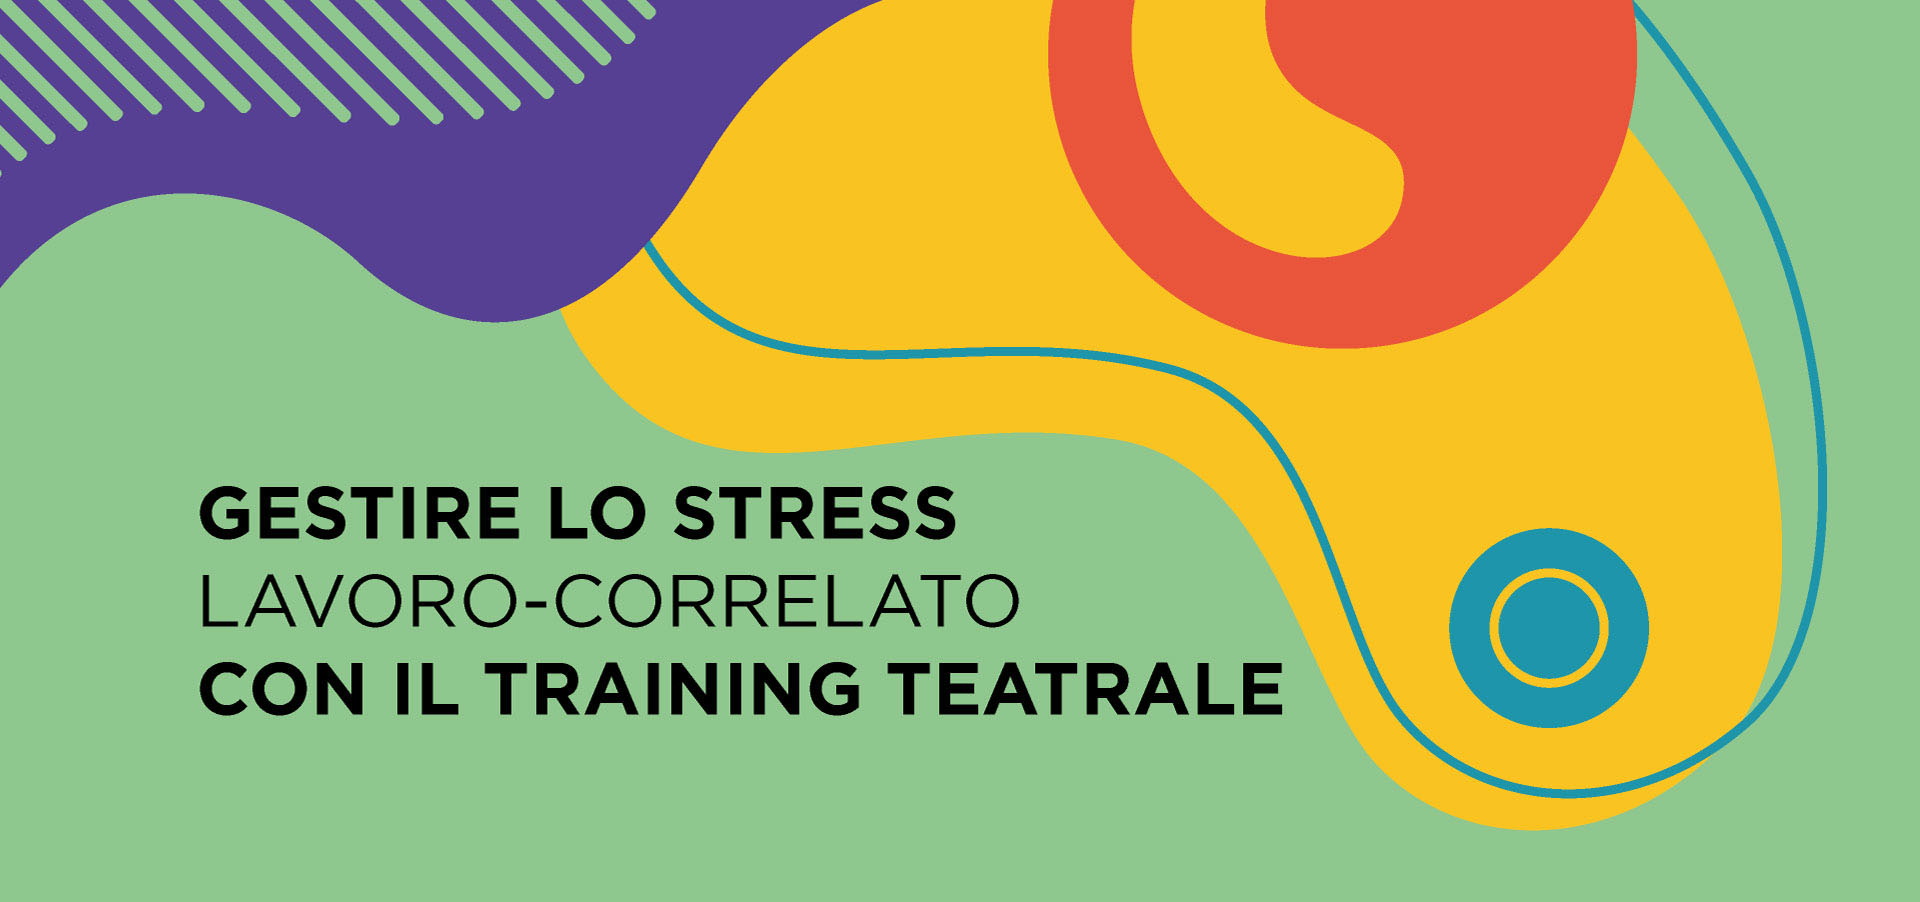 Gestire lo stress lavoro-correlato con il training teatrale